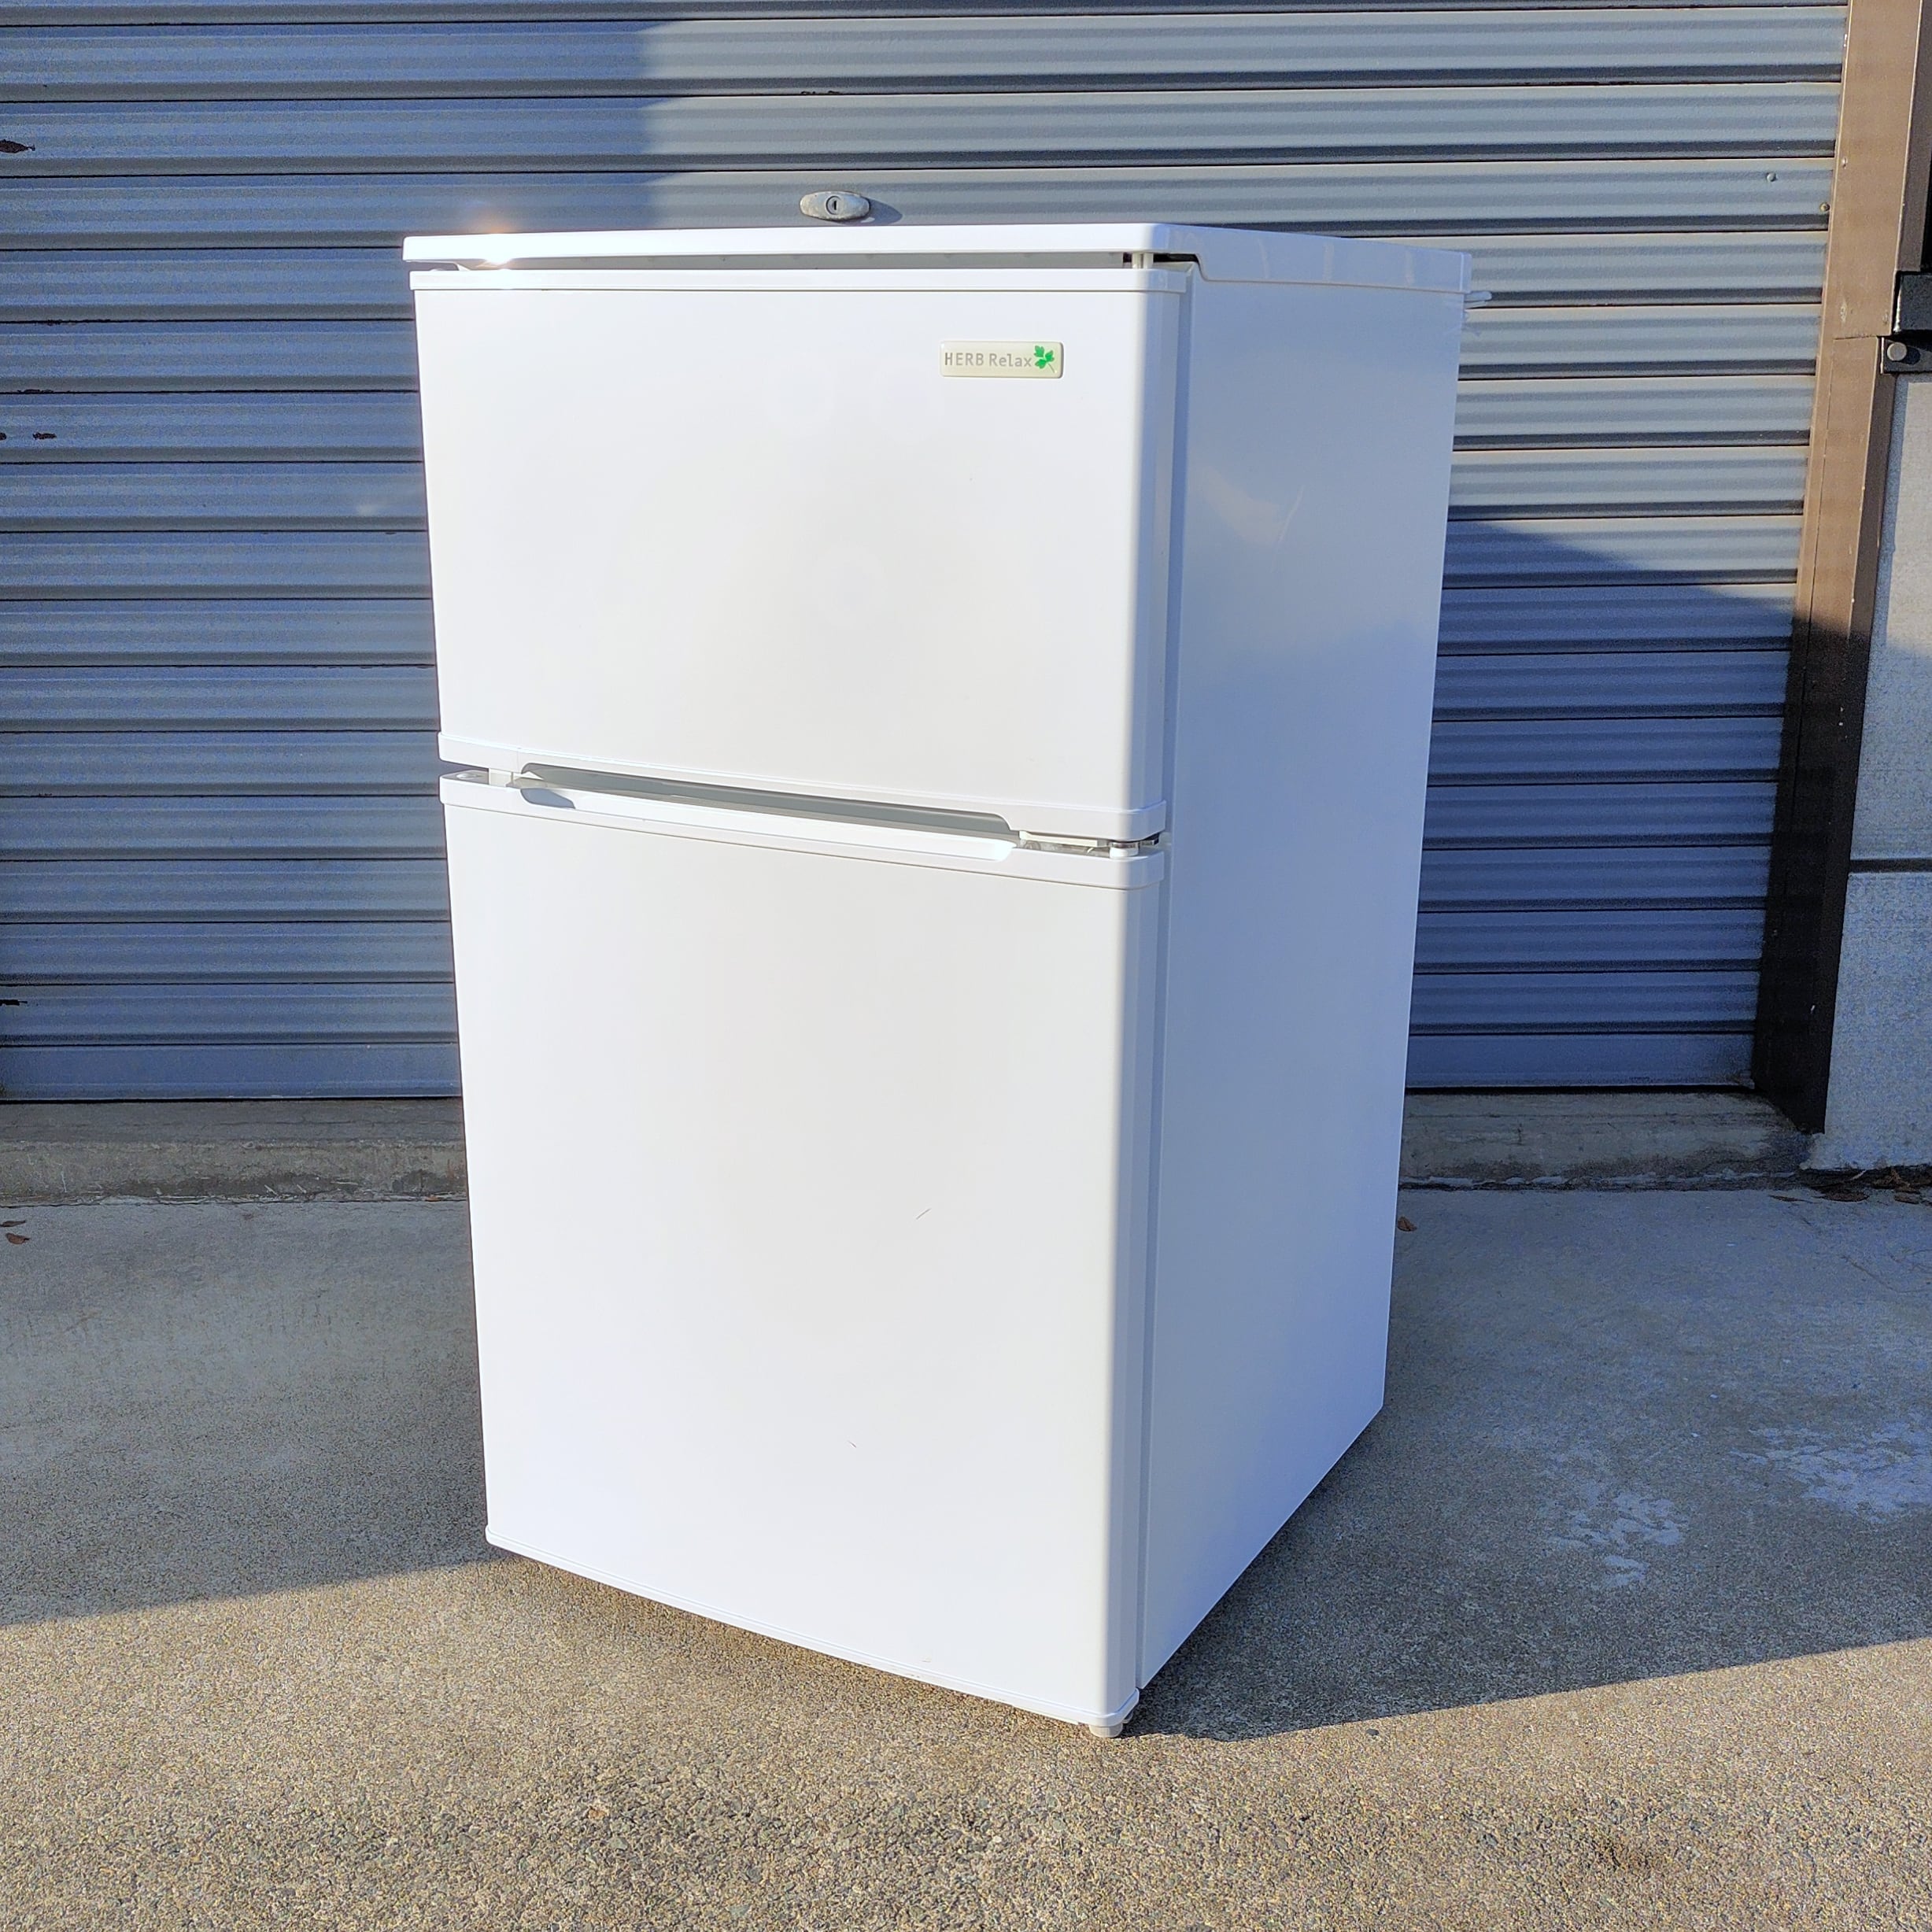 ヤマダ電機・ノンフロン冷凍冷蔵庫・HERB Relax・YRZ-C09B1・2018年製